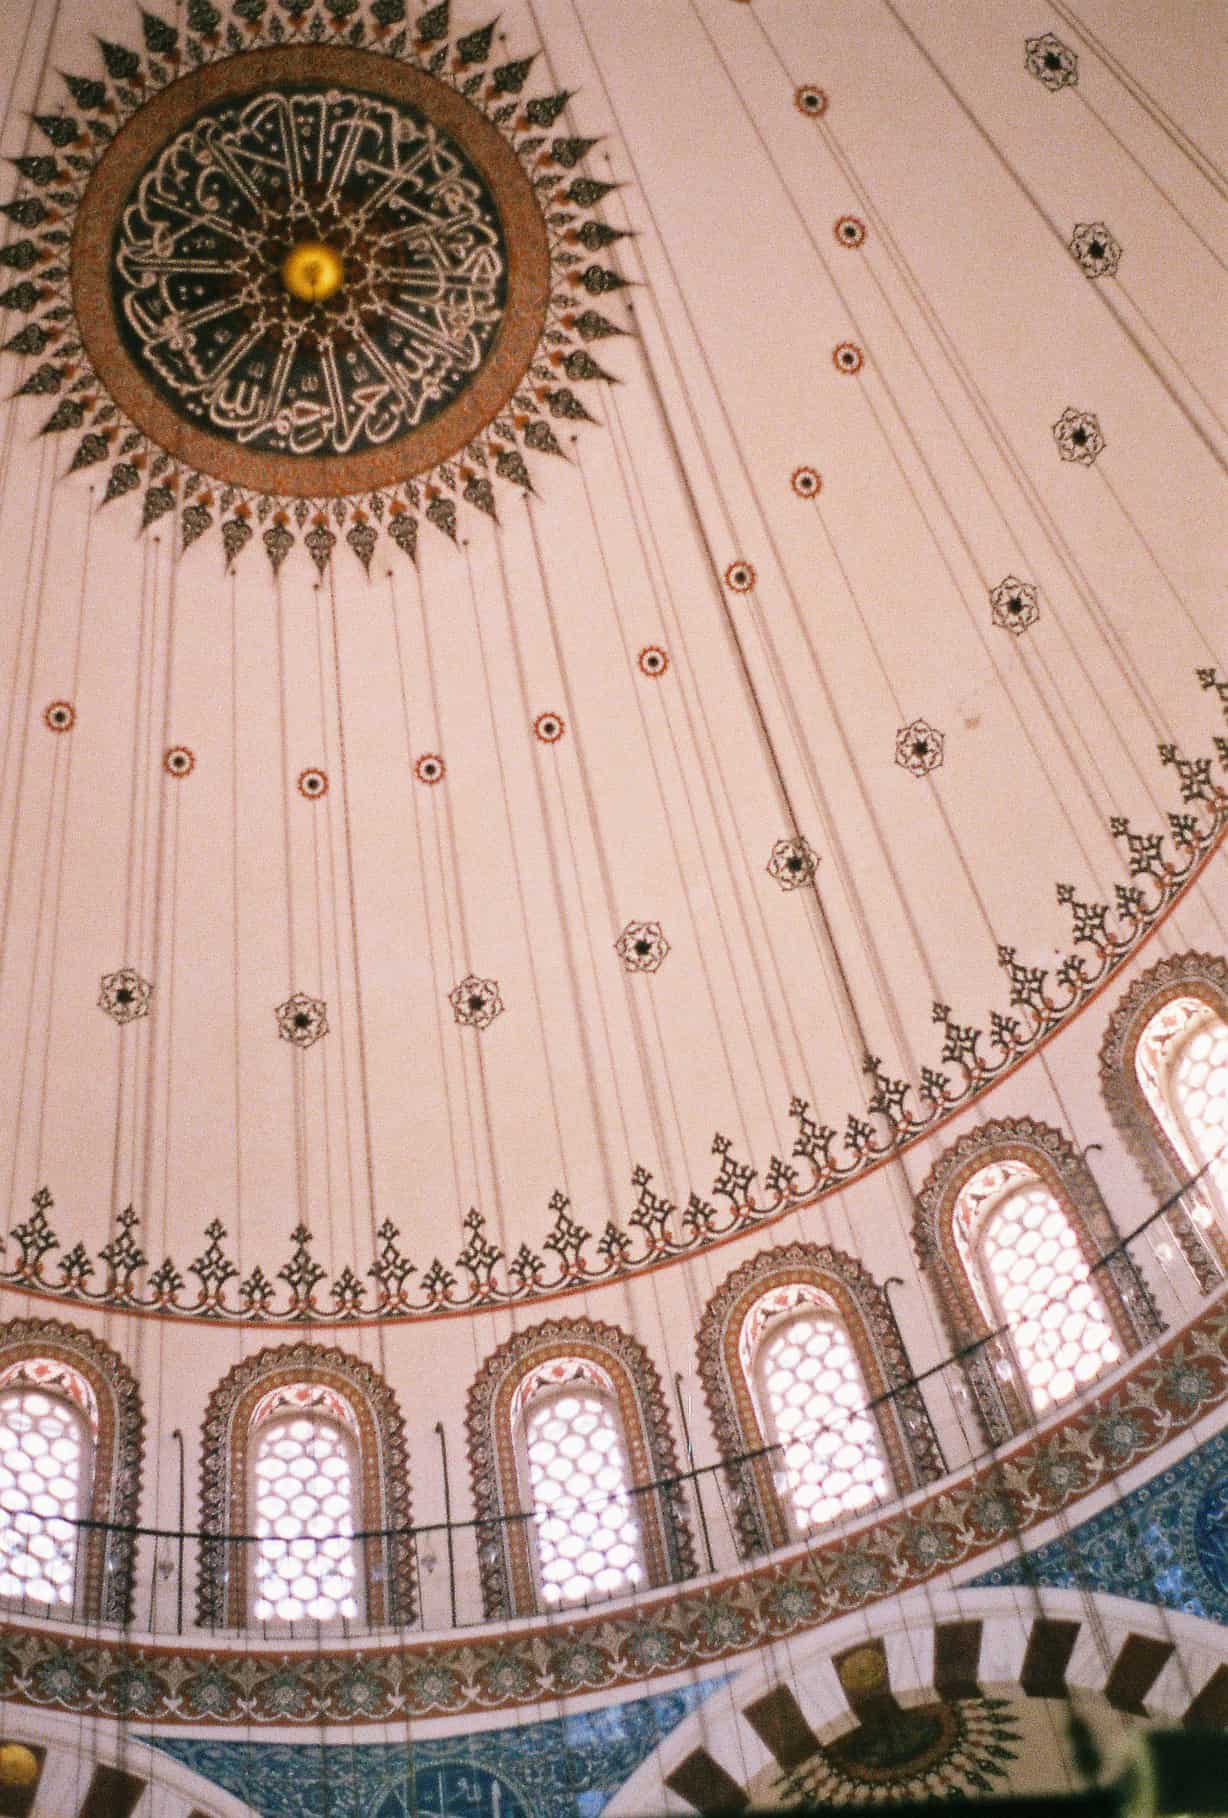 Rustem Pasha Dome (favorite mosque)